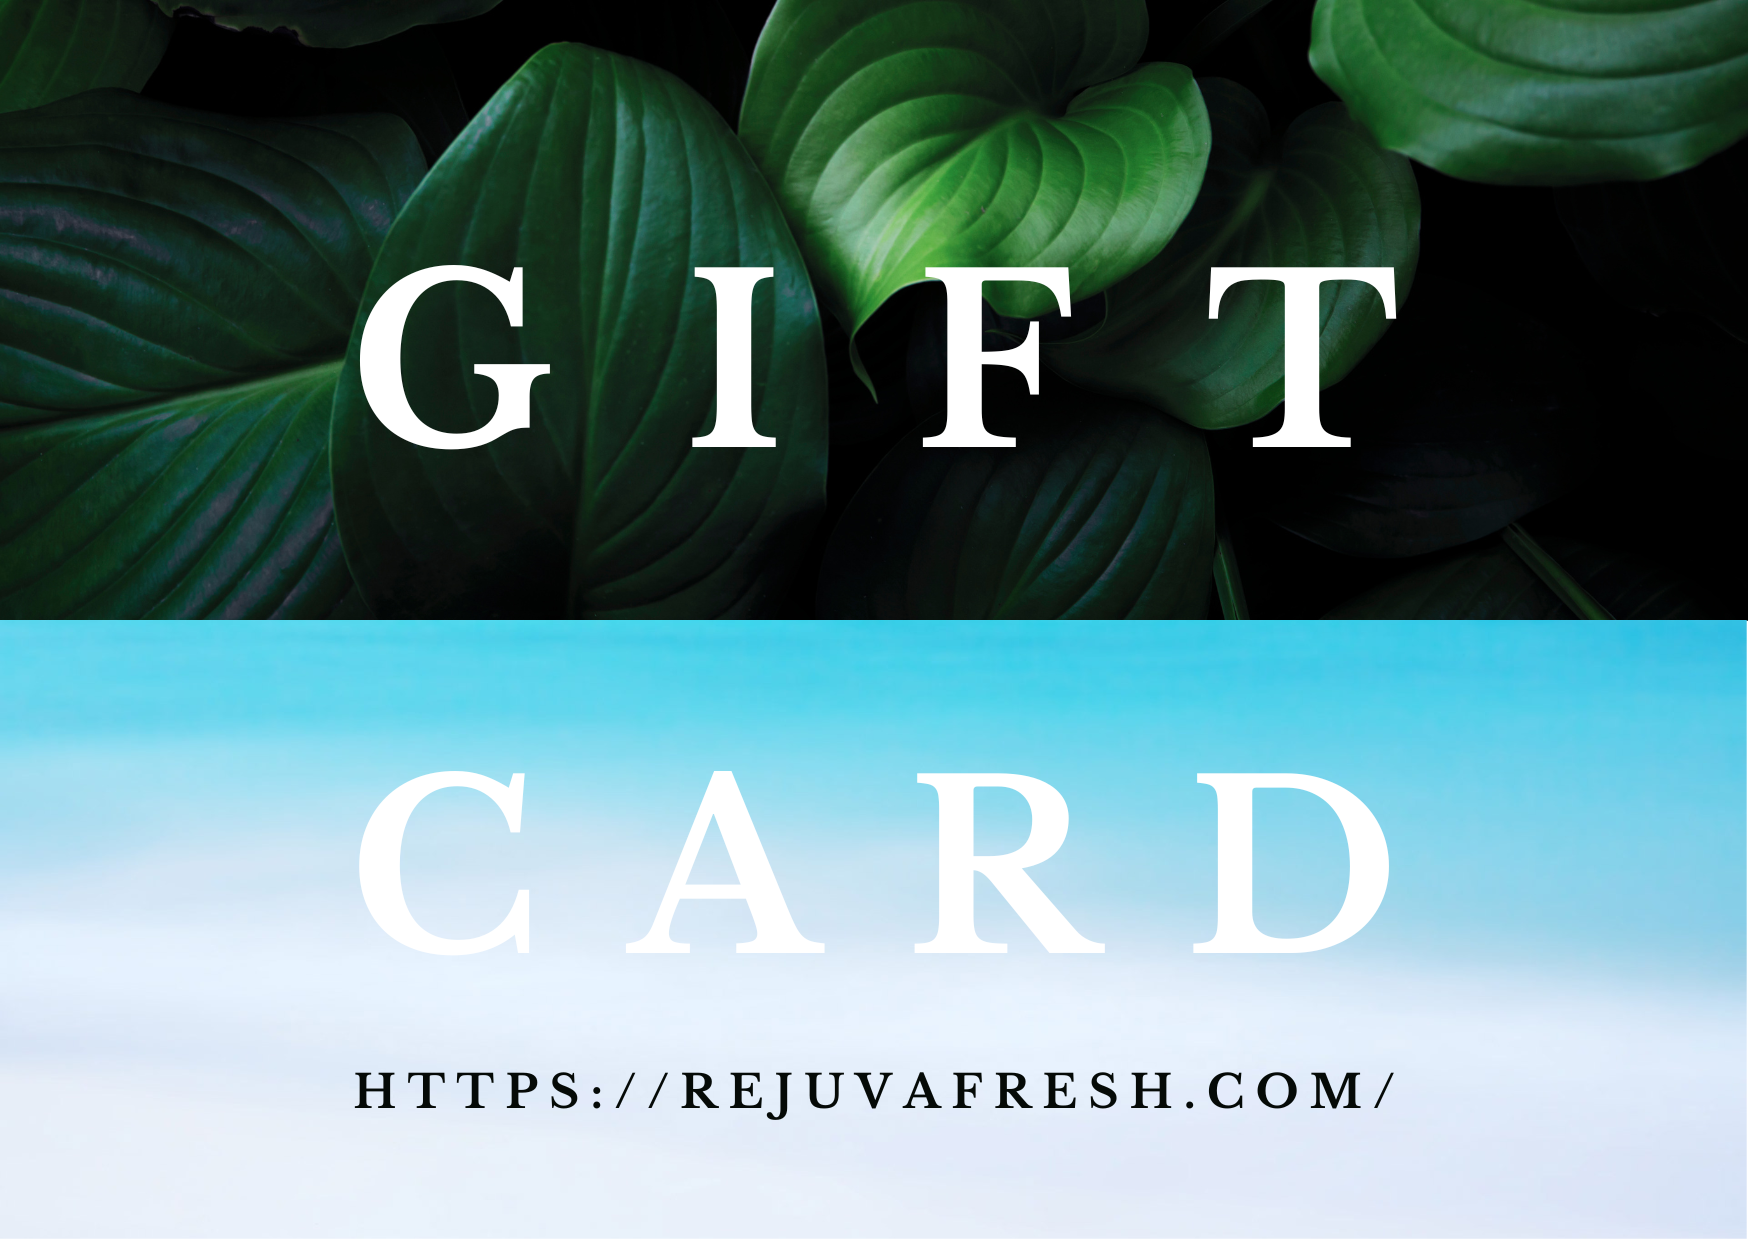 Gift Card for Rejuva Fresh website, green leaves, blue water